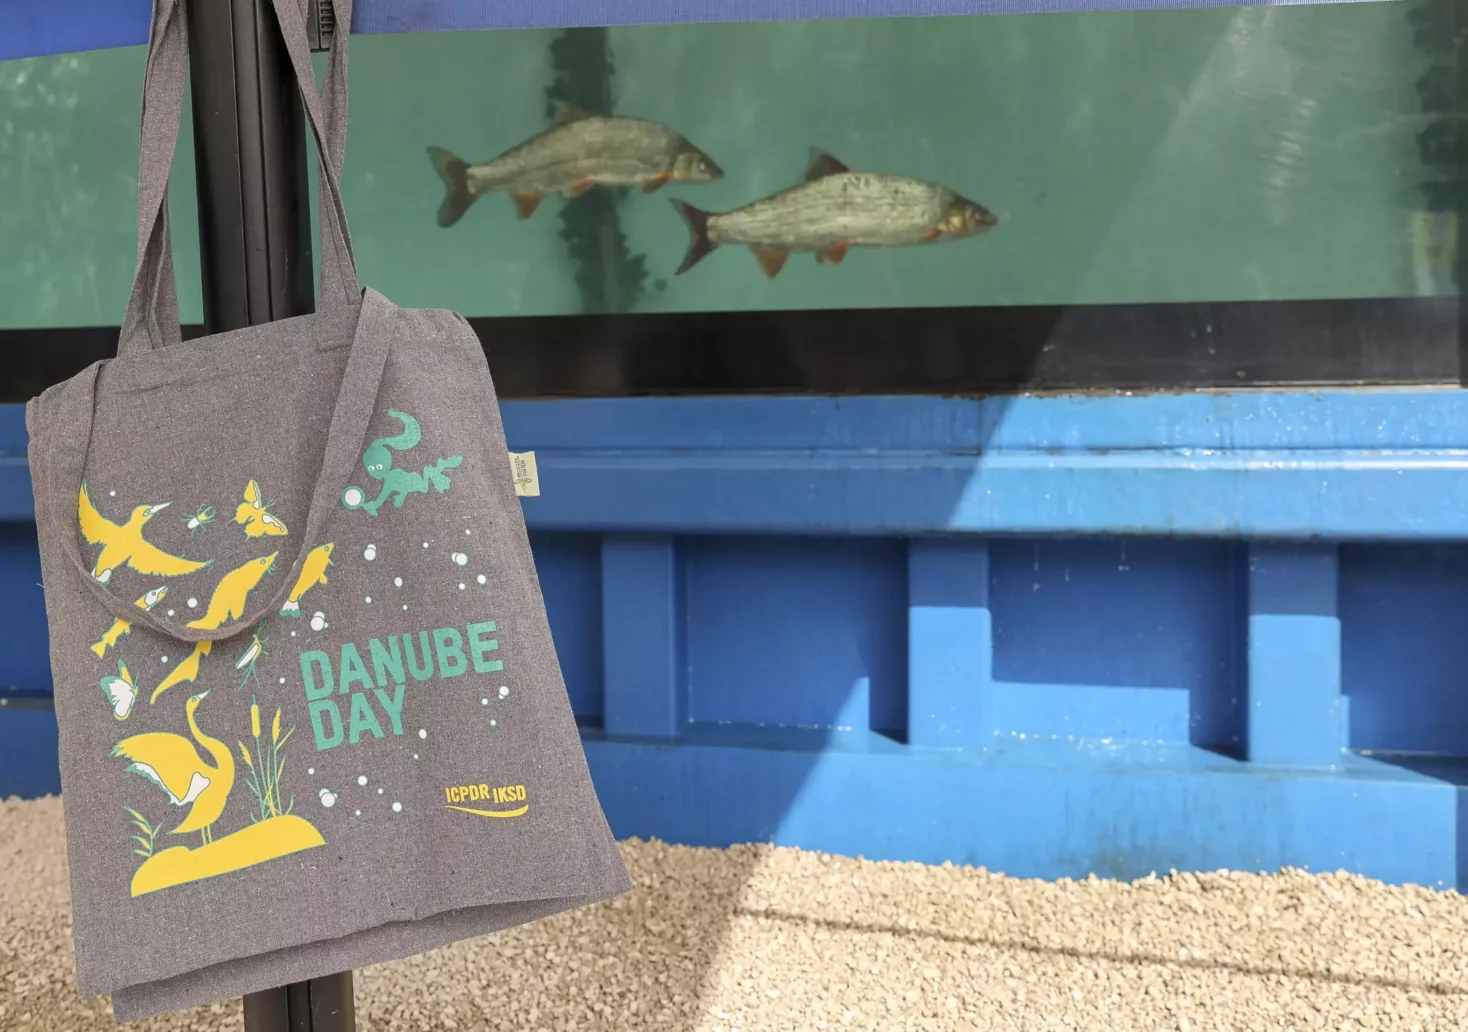 Europas größtes mobiles Aquarium begeistert mitten in Wien für Donau-Schutz